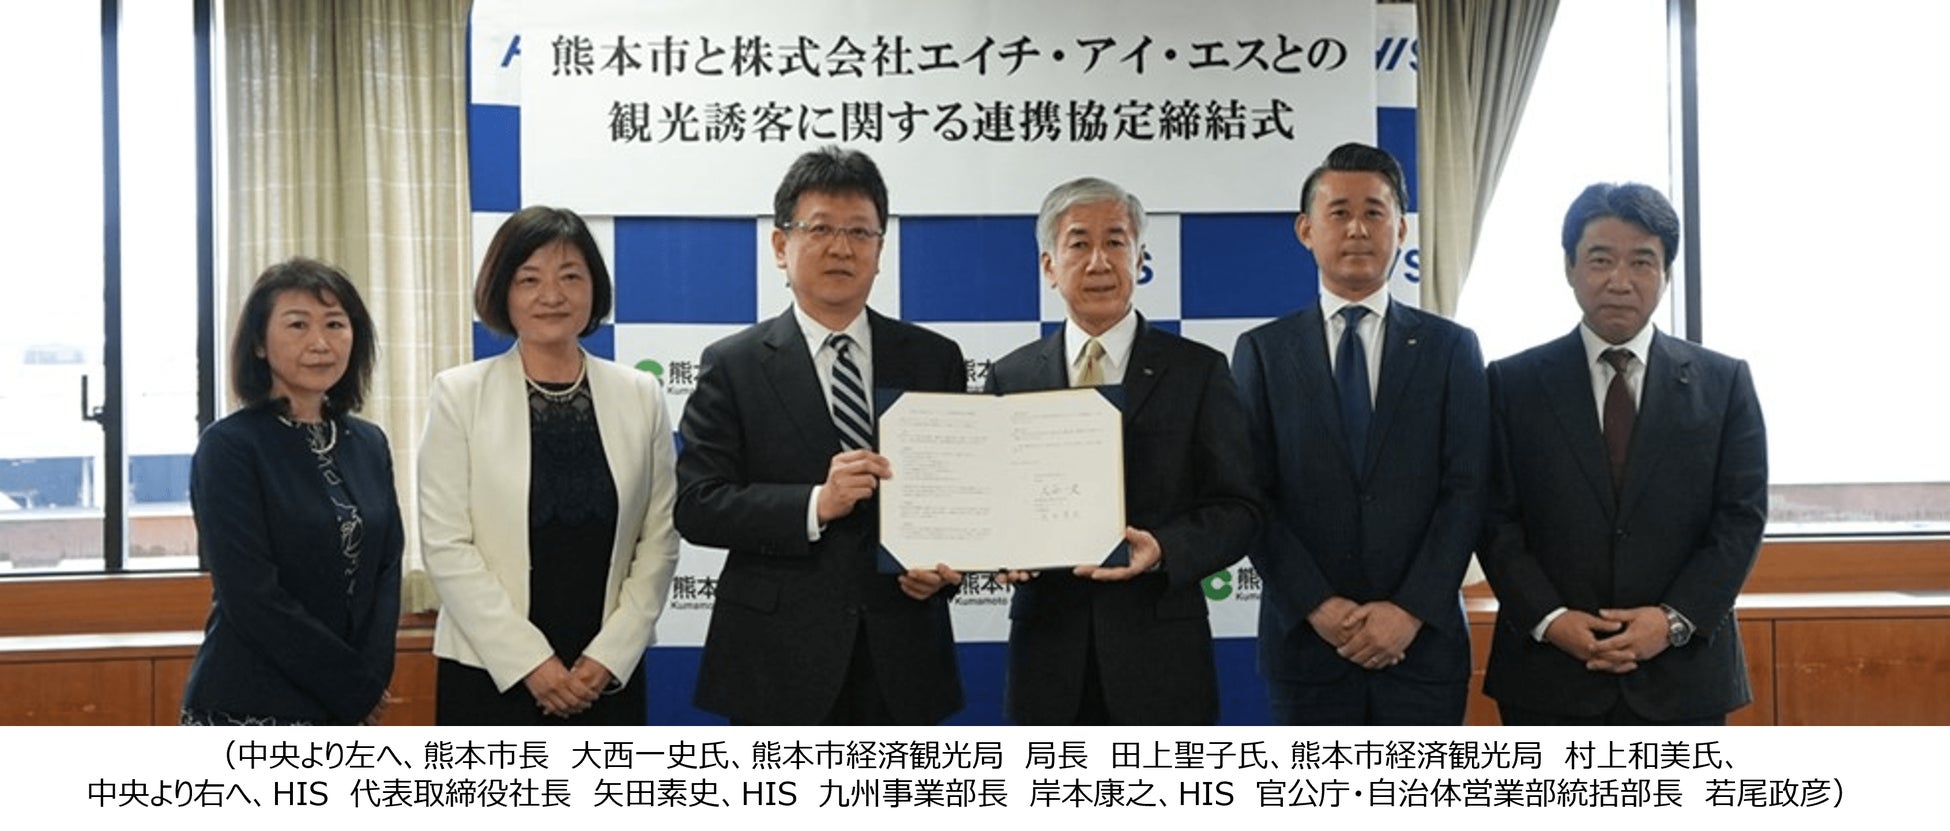 熊本市と観光誘客に関する連携協定を締結　国内・海外における熊本市への誘客と観光振興を推進